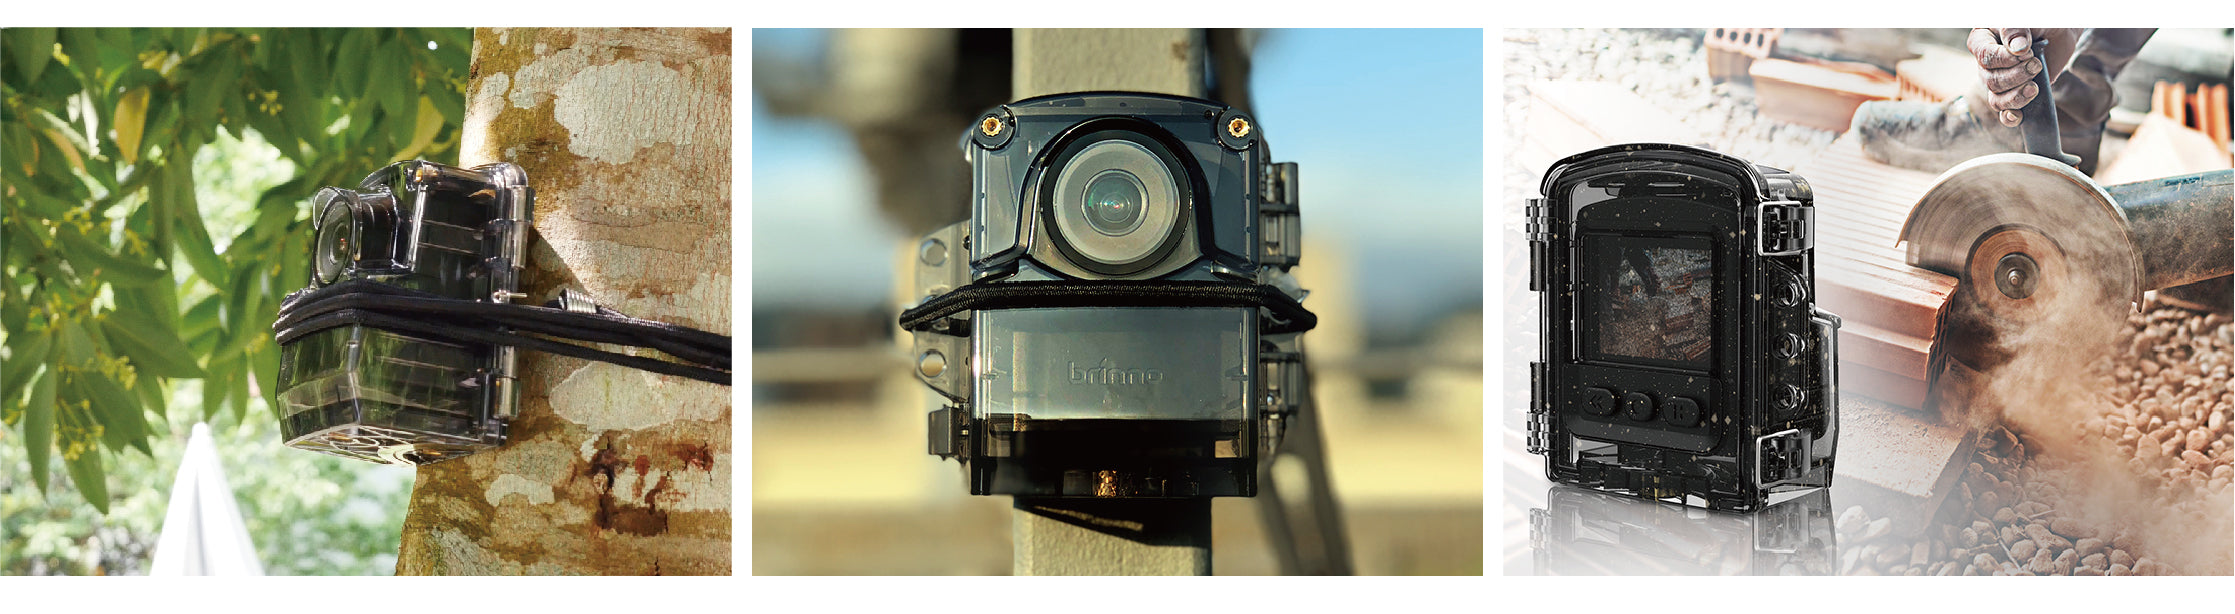 Brinno ATH1000 アウトドアカメラハウジングユニット – 屋外環境での